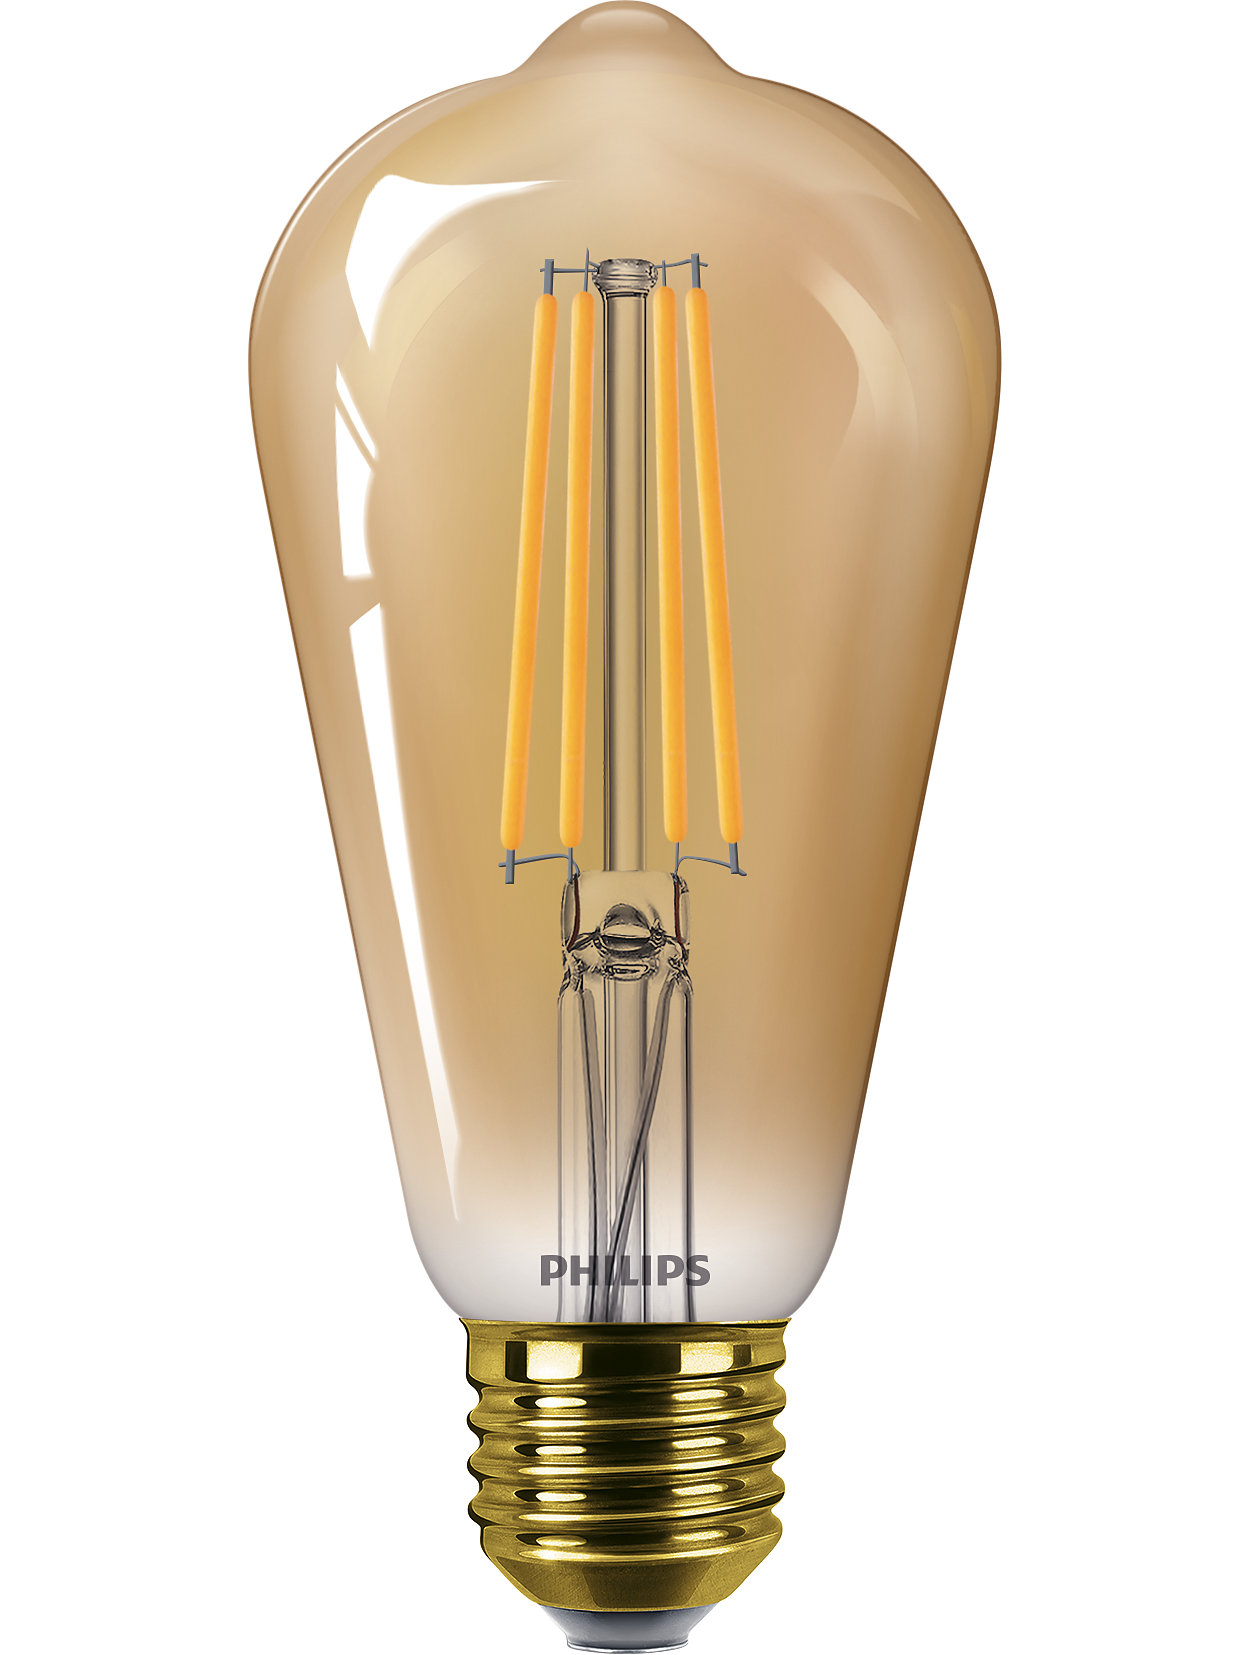 Ultramoderne LED-lamp voor in huis